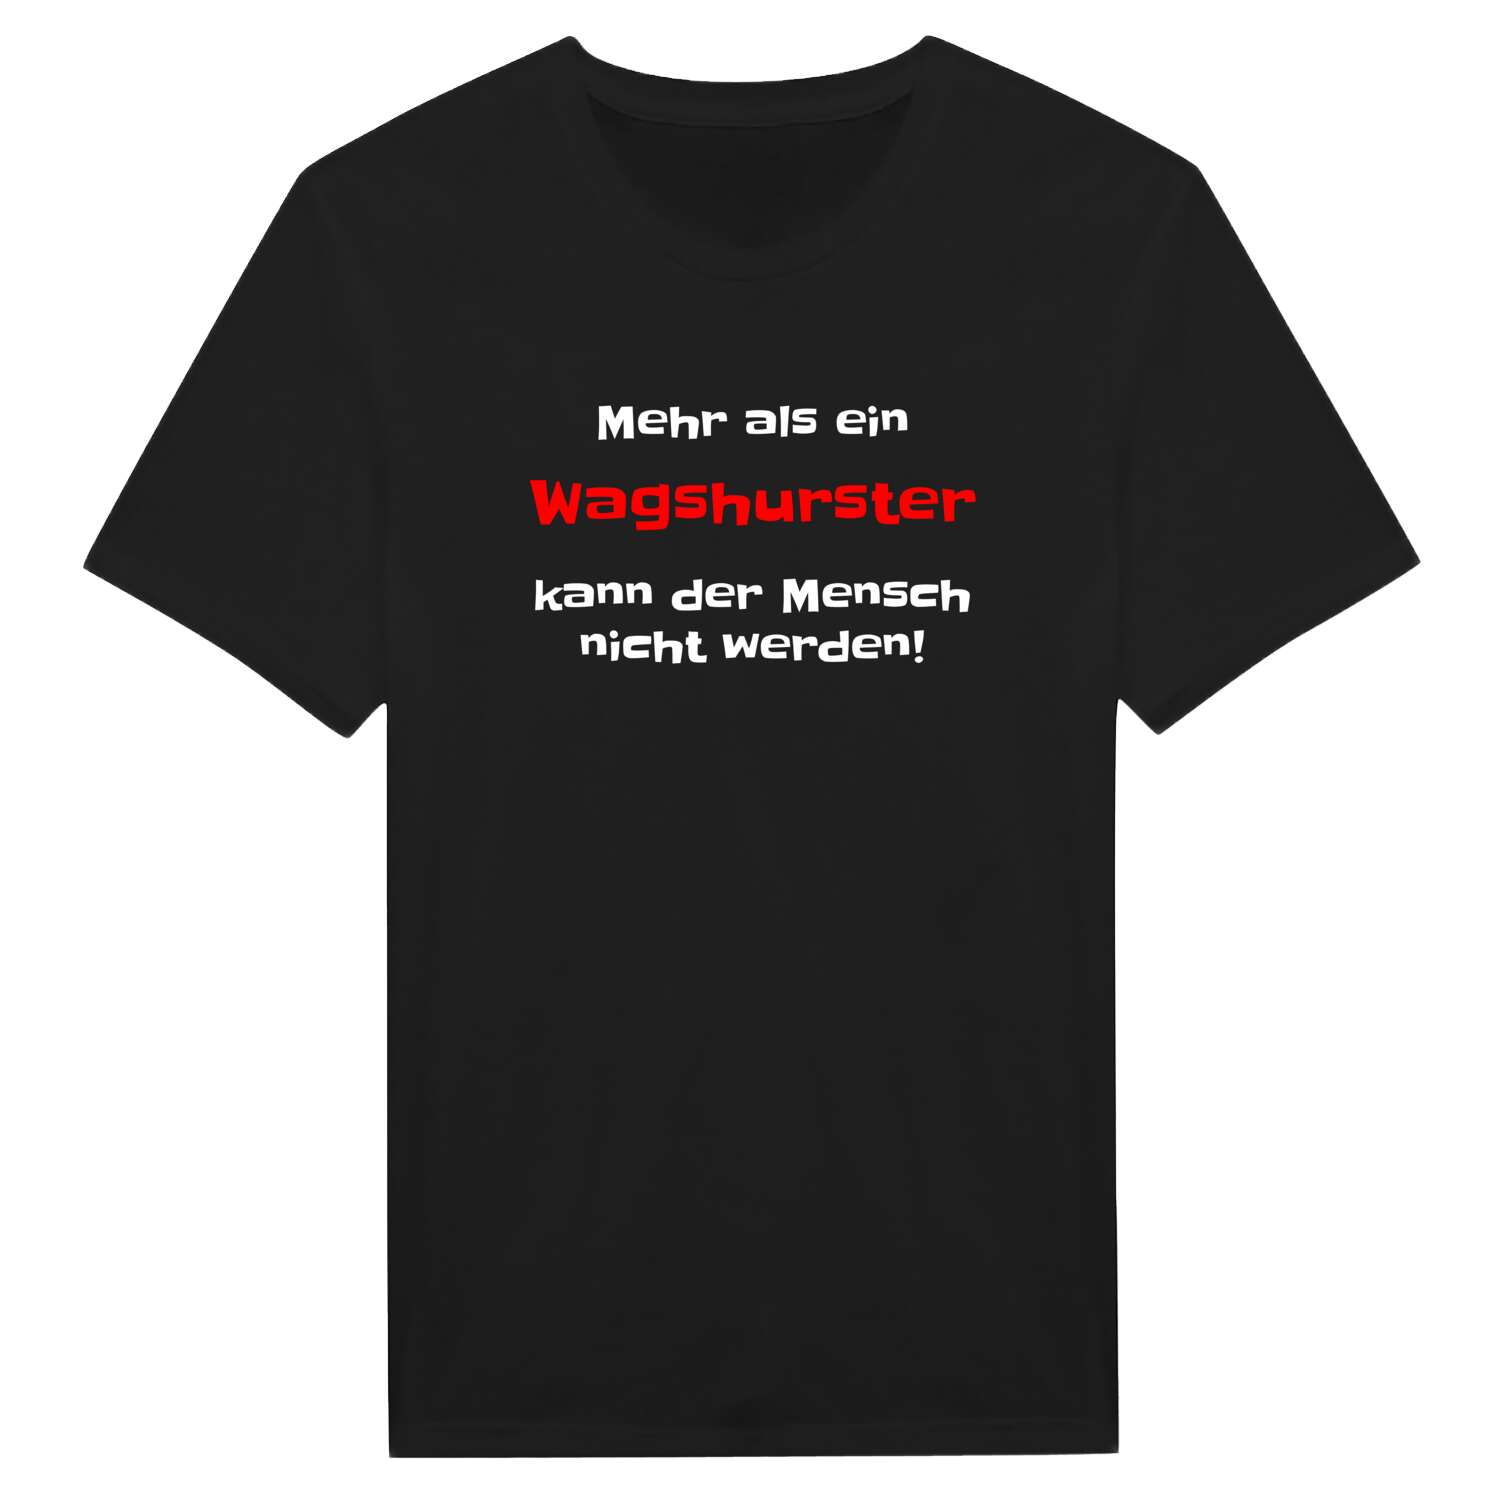 Wagshurst T-Shirt »Mehr als ein«